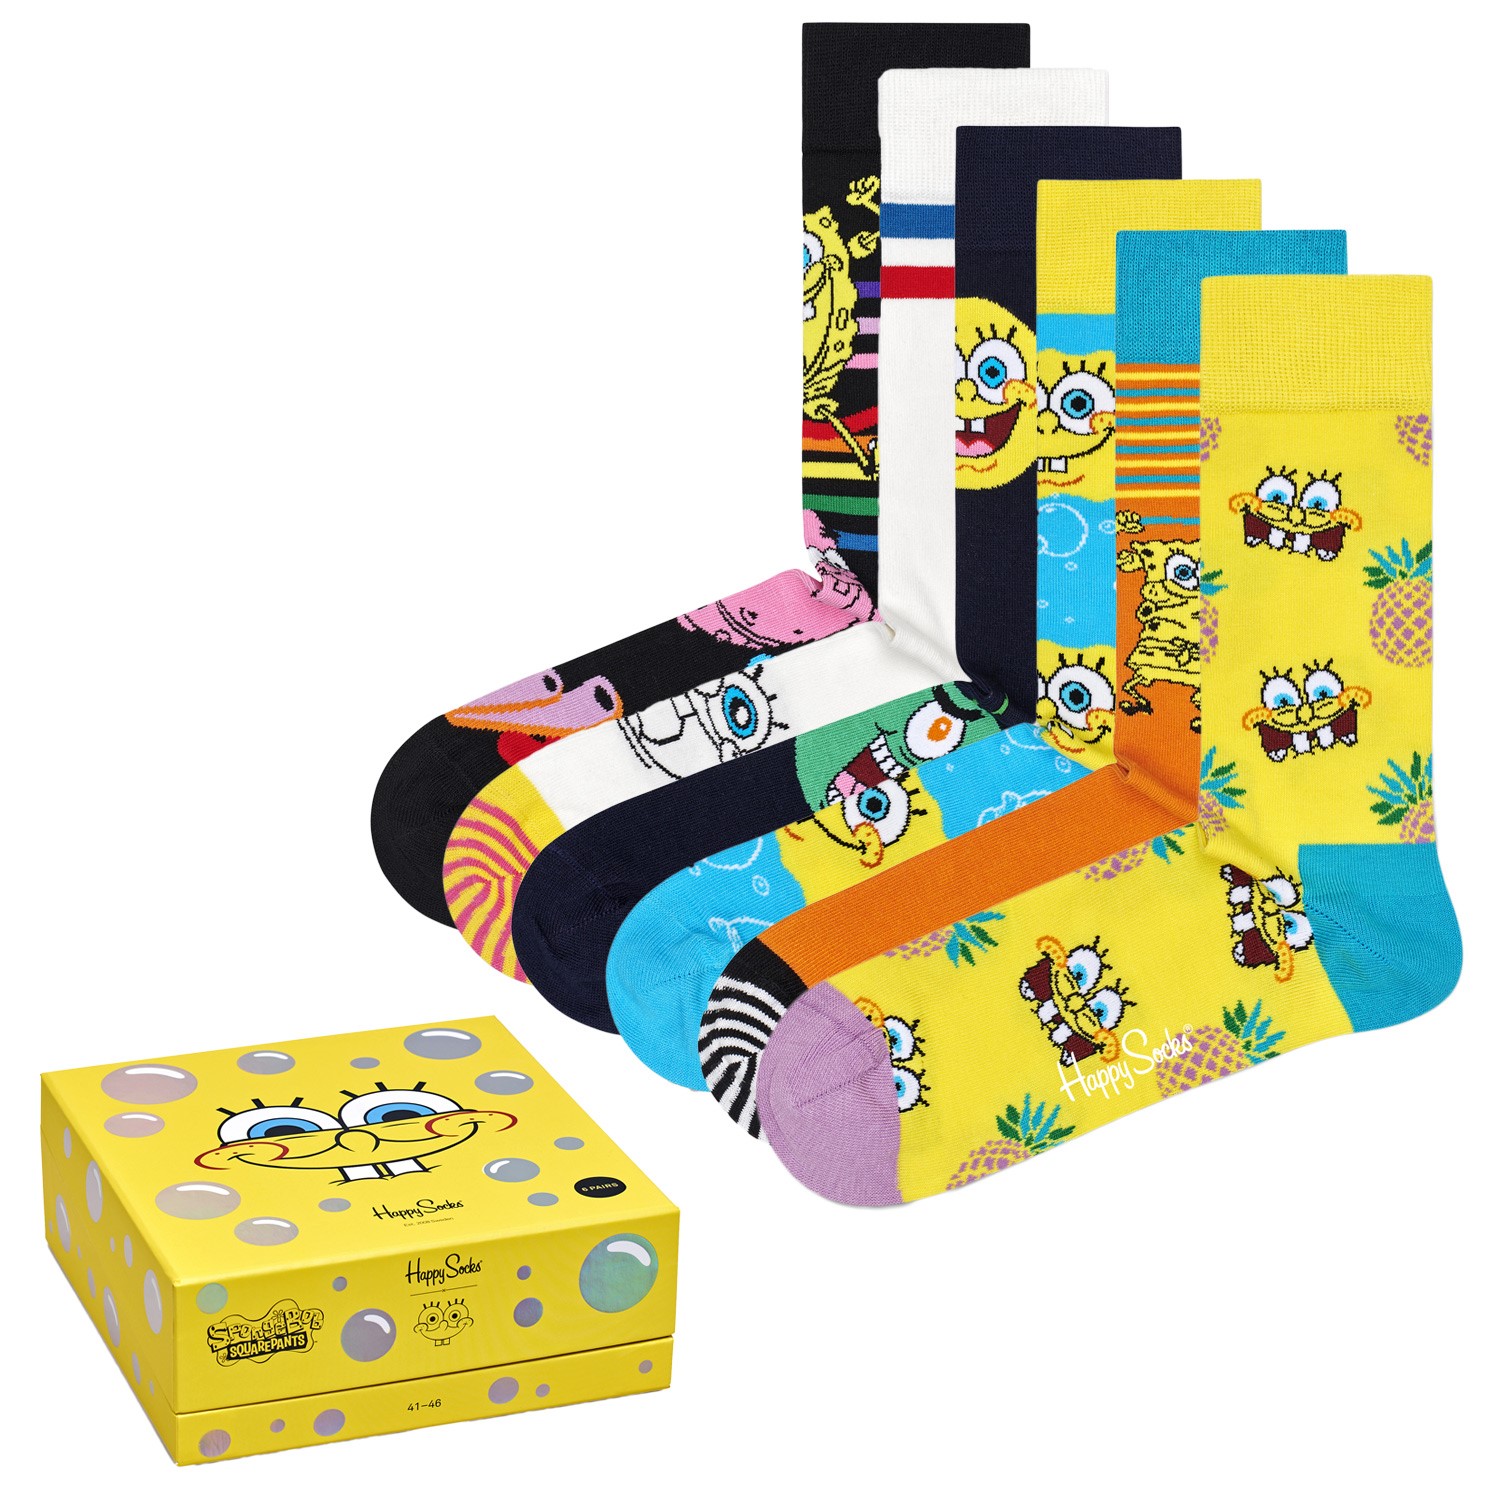 Happy Socks Sponge Bob Gift Box Socks